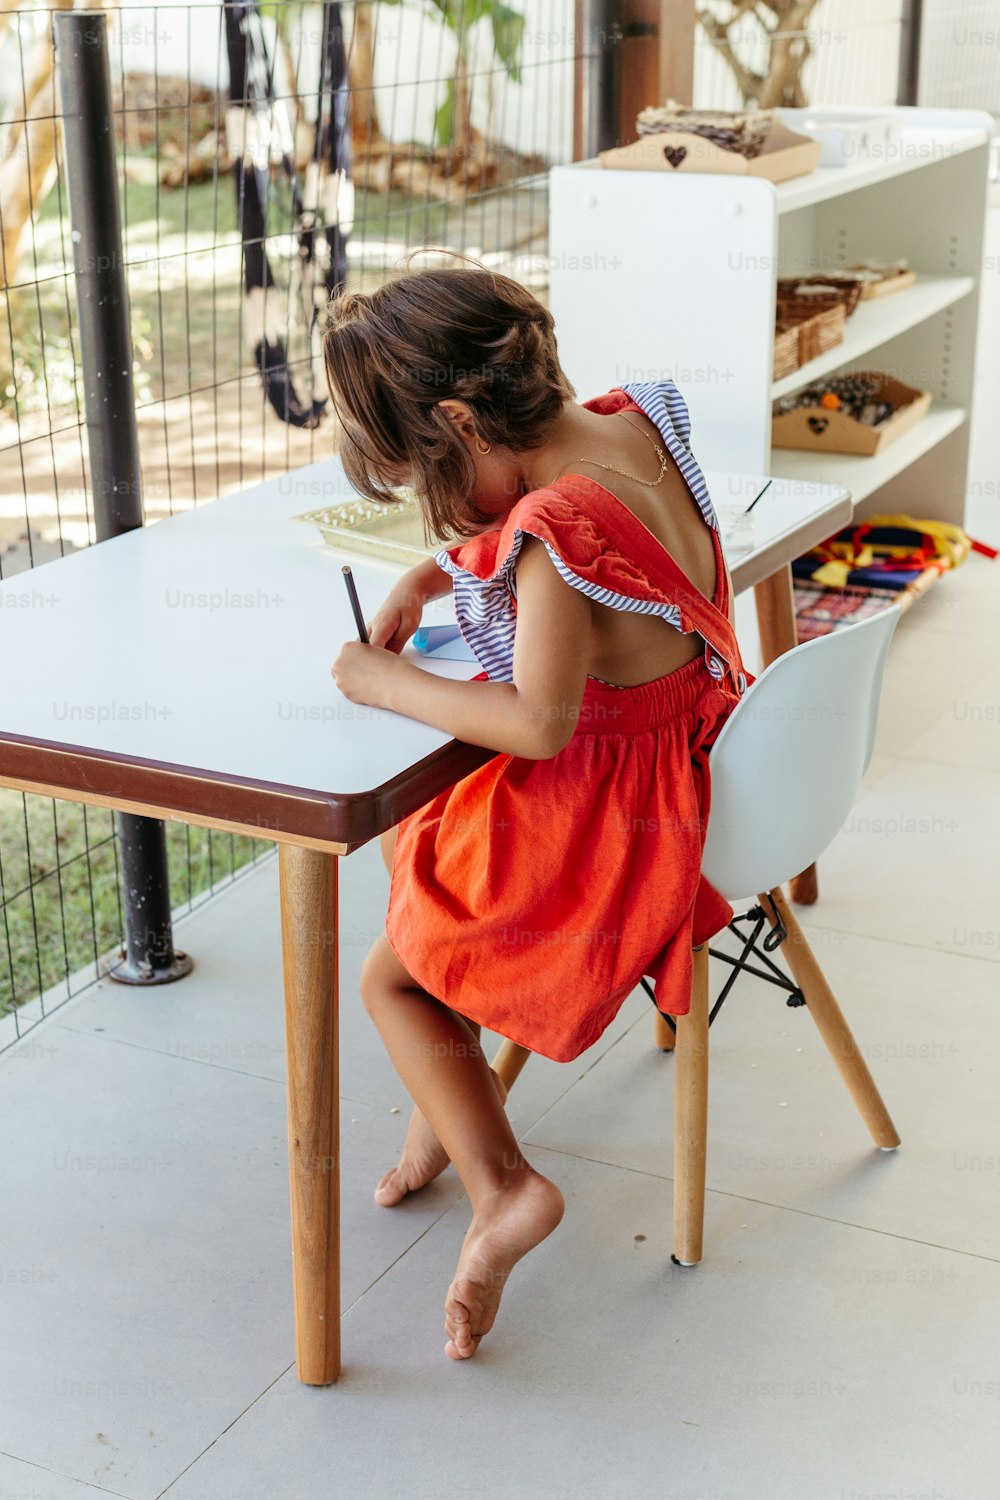 테이블에 앉아 종이에 글을 쓰는 어린 소녀